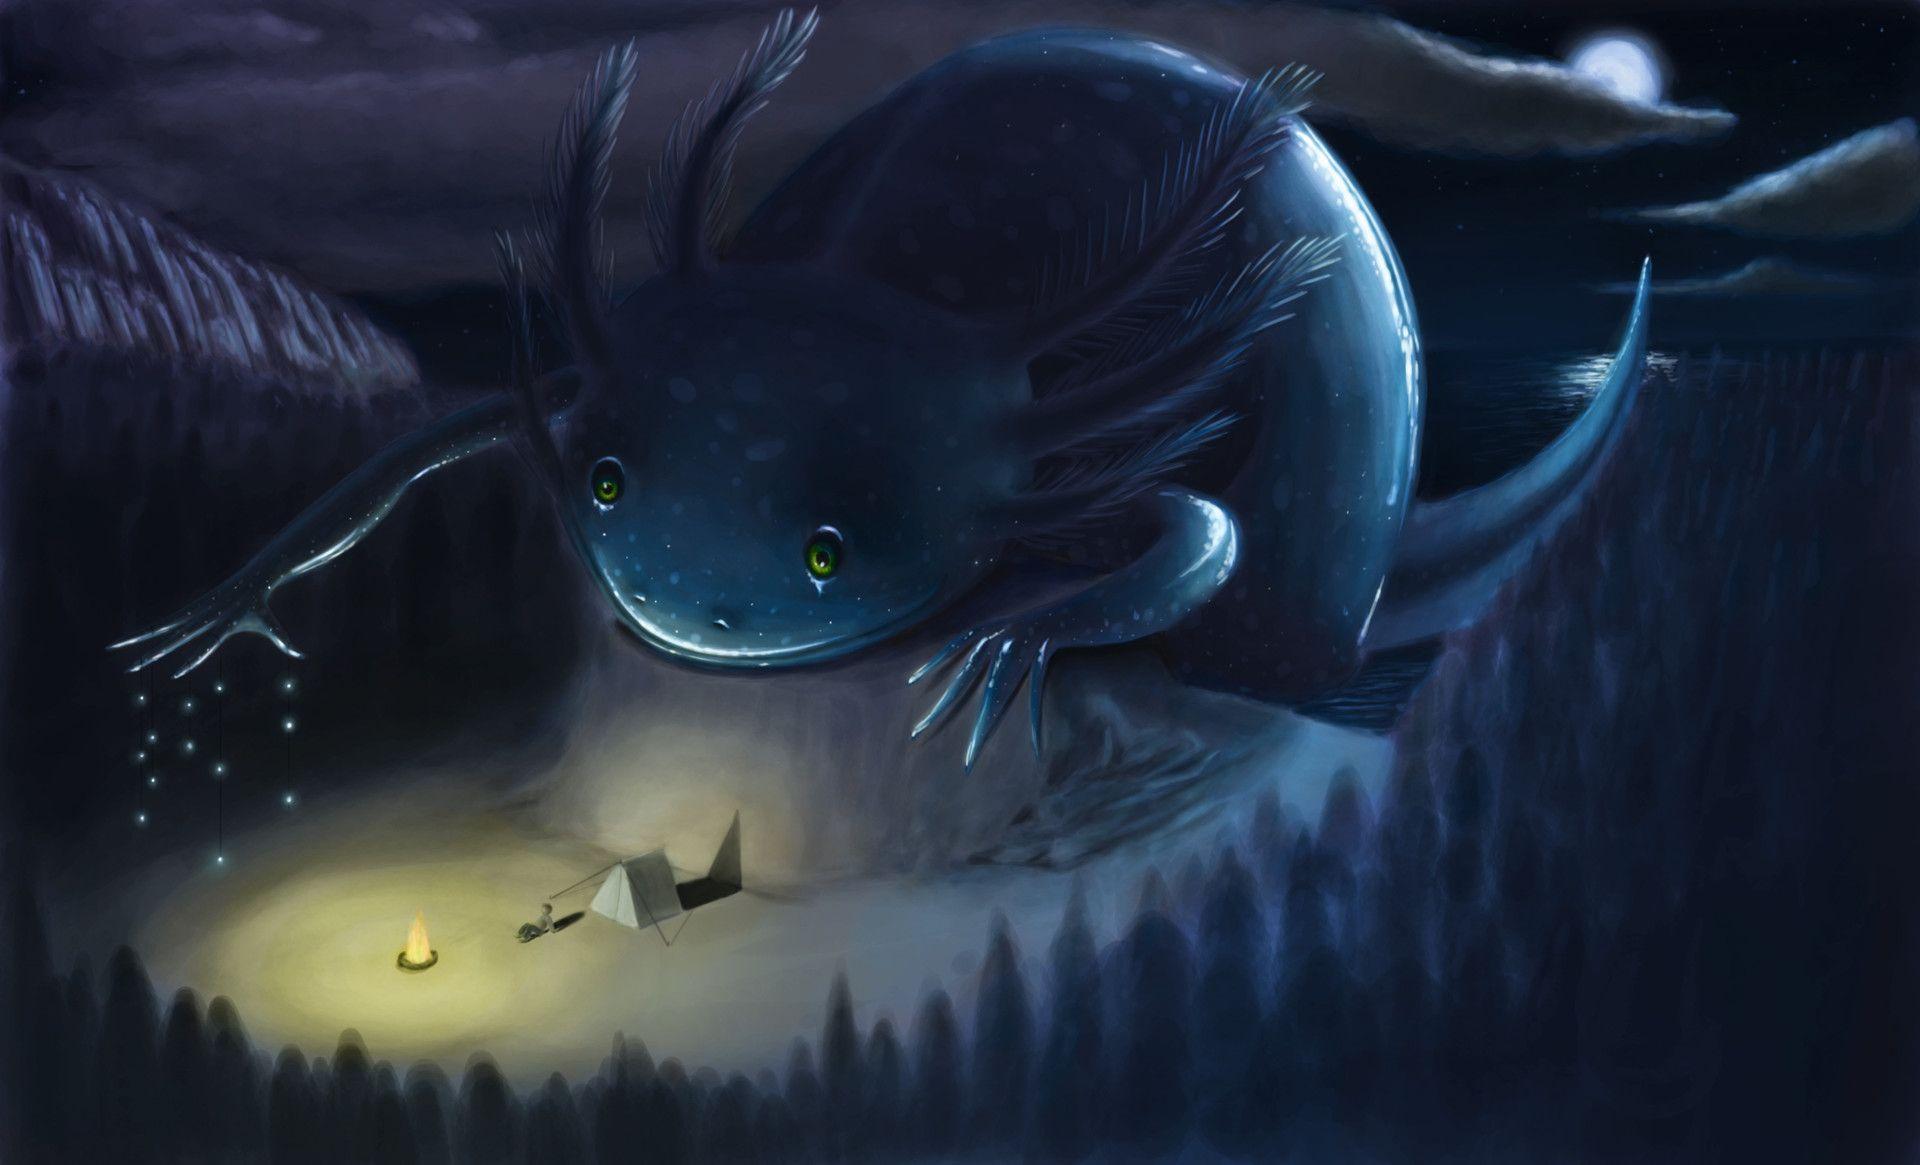 Night Axolotl by Jean Paul Medellin